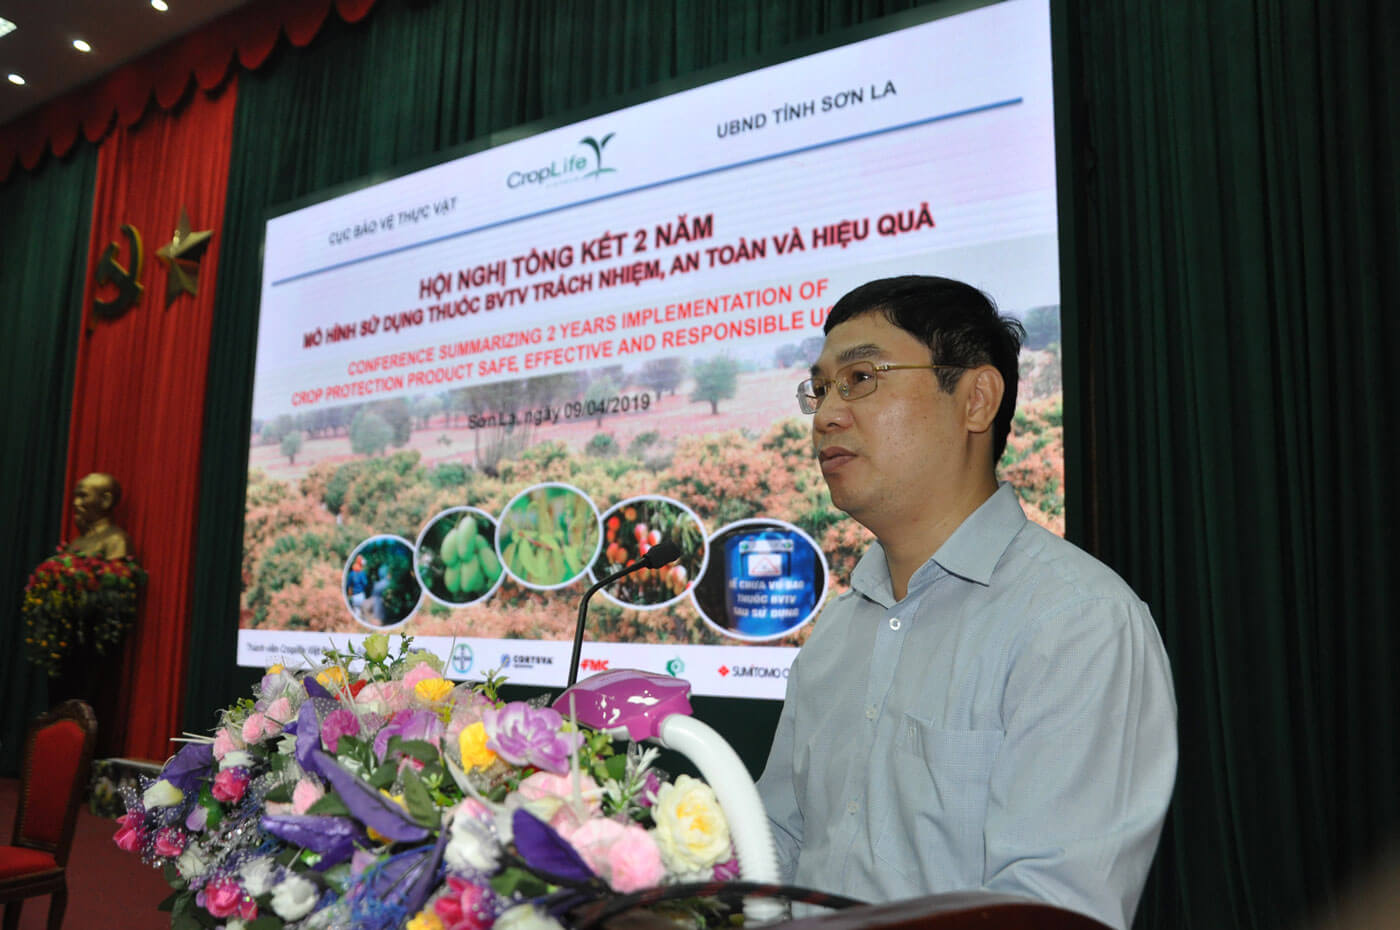 Ông Nguyễn Quý Dương - Phó Cục trưởng Cục BVTV (Bộ NNPTNT) phát biểu tại hội nghị ngày 9.4 ở Sơn La.